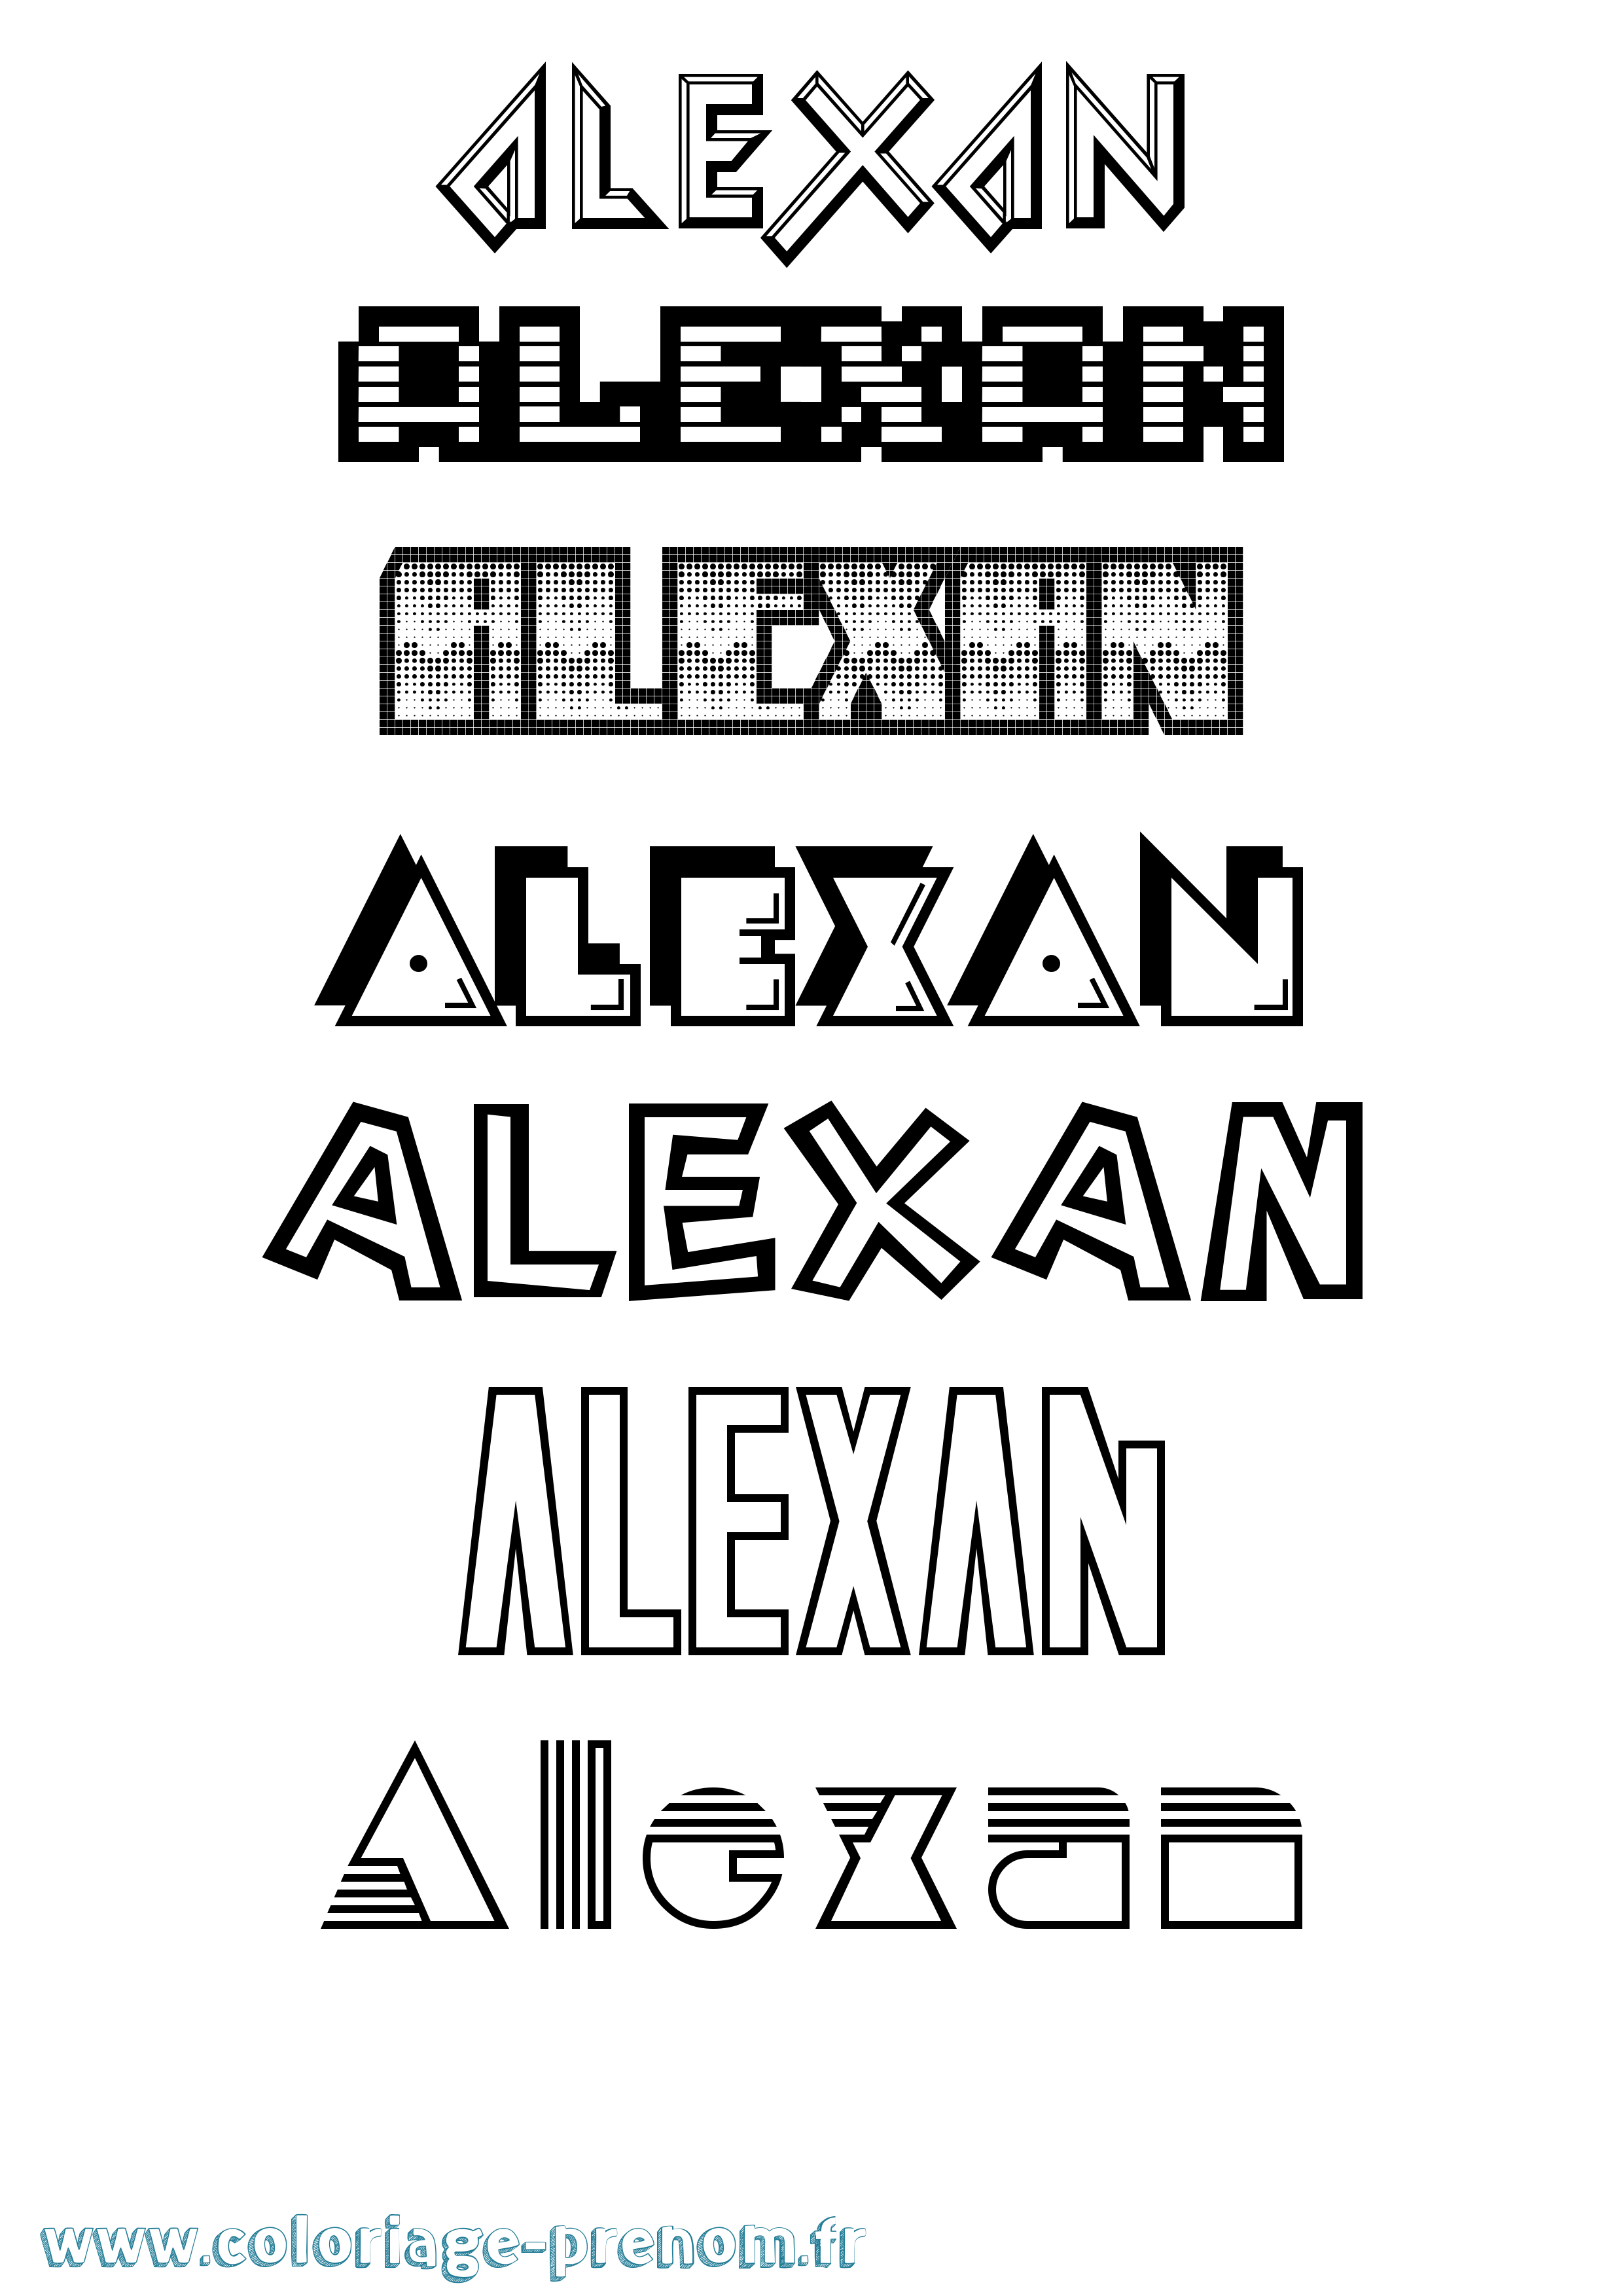 Coloriage prénom Alexan Jeux Vidéos